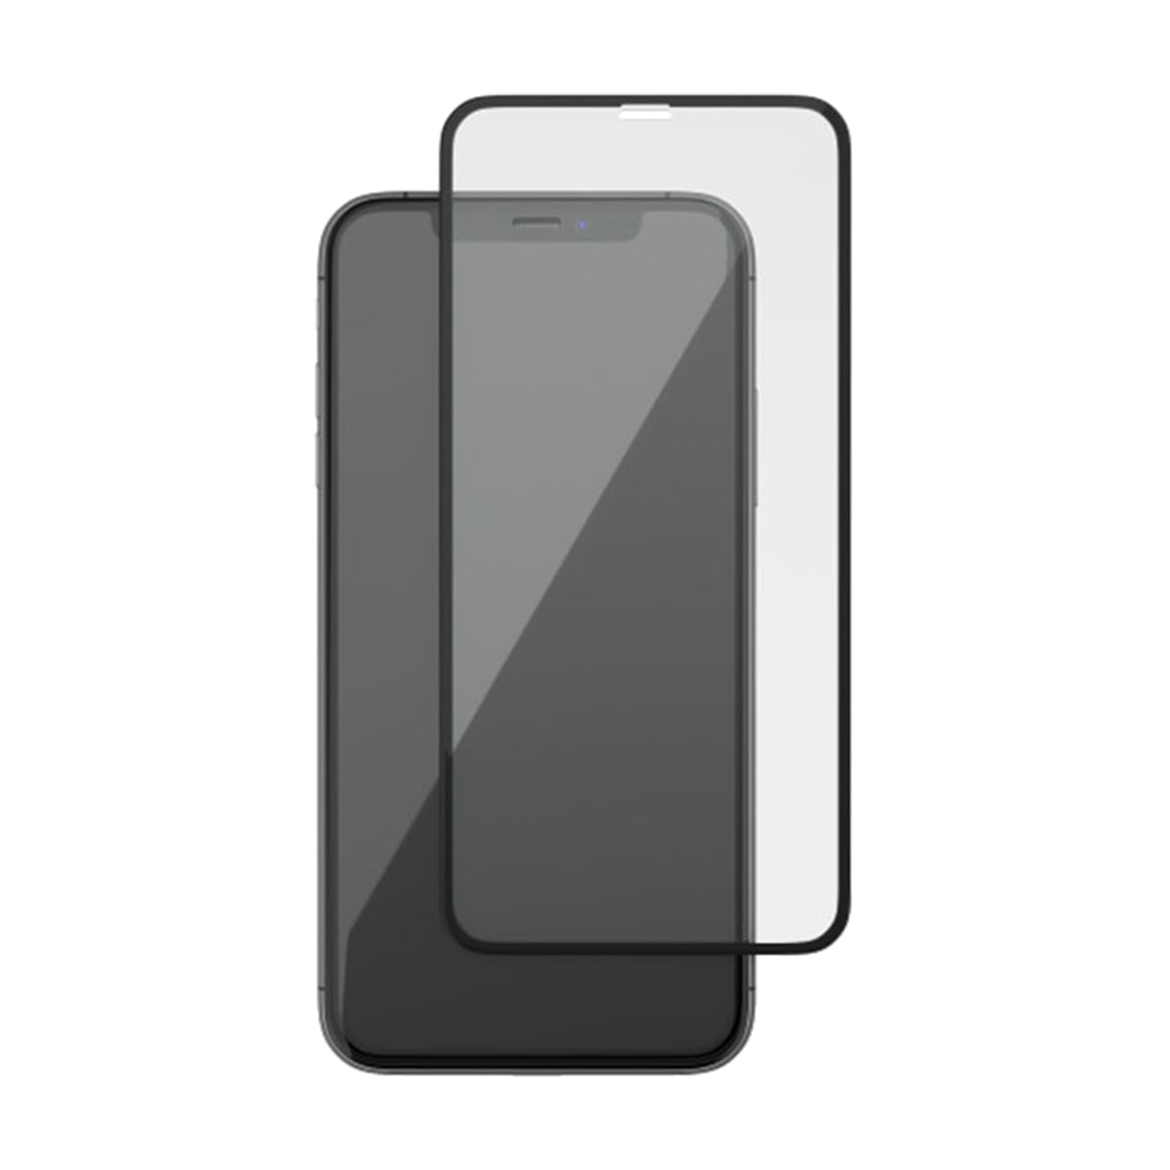 Защитное стекло uBear 3D Full Screen Premium Glass для Apple iPhone 11 Pro/XS/X, черная рамка, цвет черный iPhone 11 Pro, iPhone XS, iPhone X - фото 1